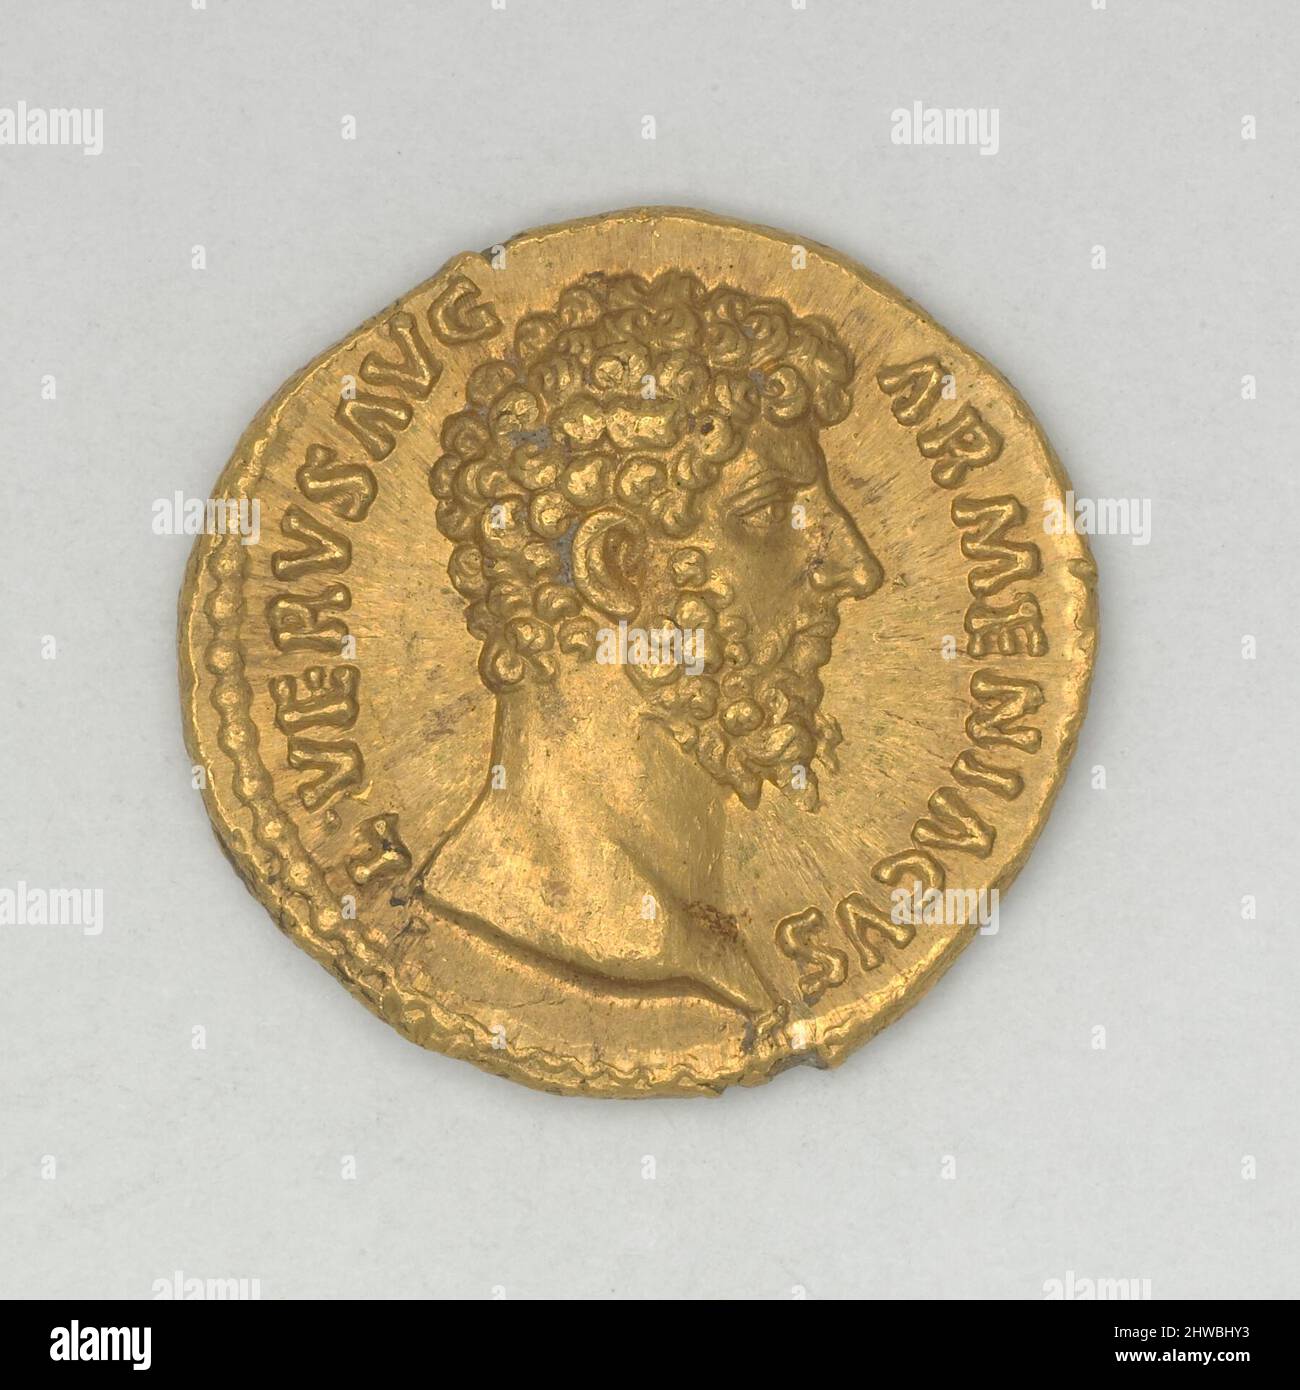 Aureus of L. Verus, Emperor of Rome from Rome. Ruler: L. Verus, Emperor of Rome, A.D. 161-169 Mint: Rome Artist: Unknown Stock Photo